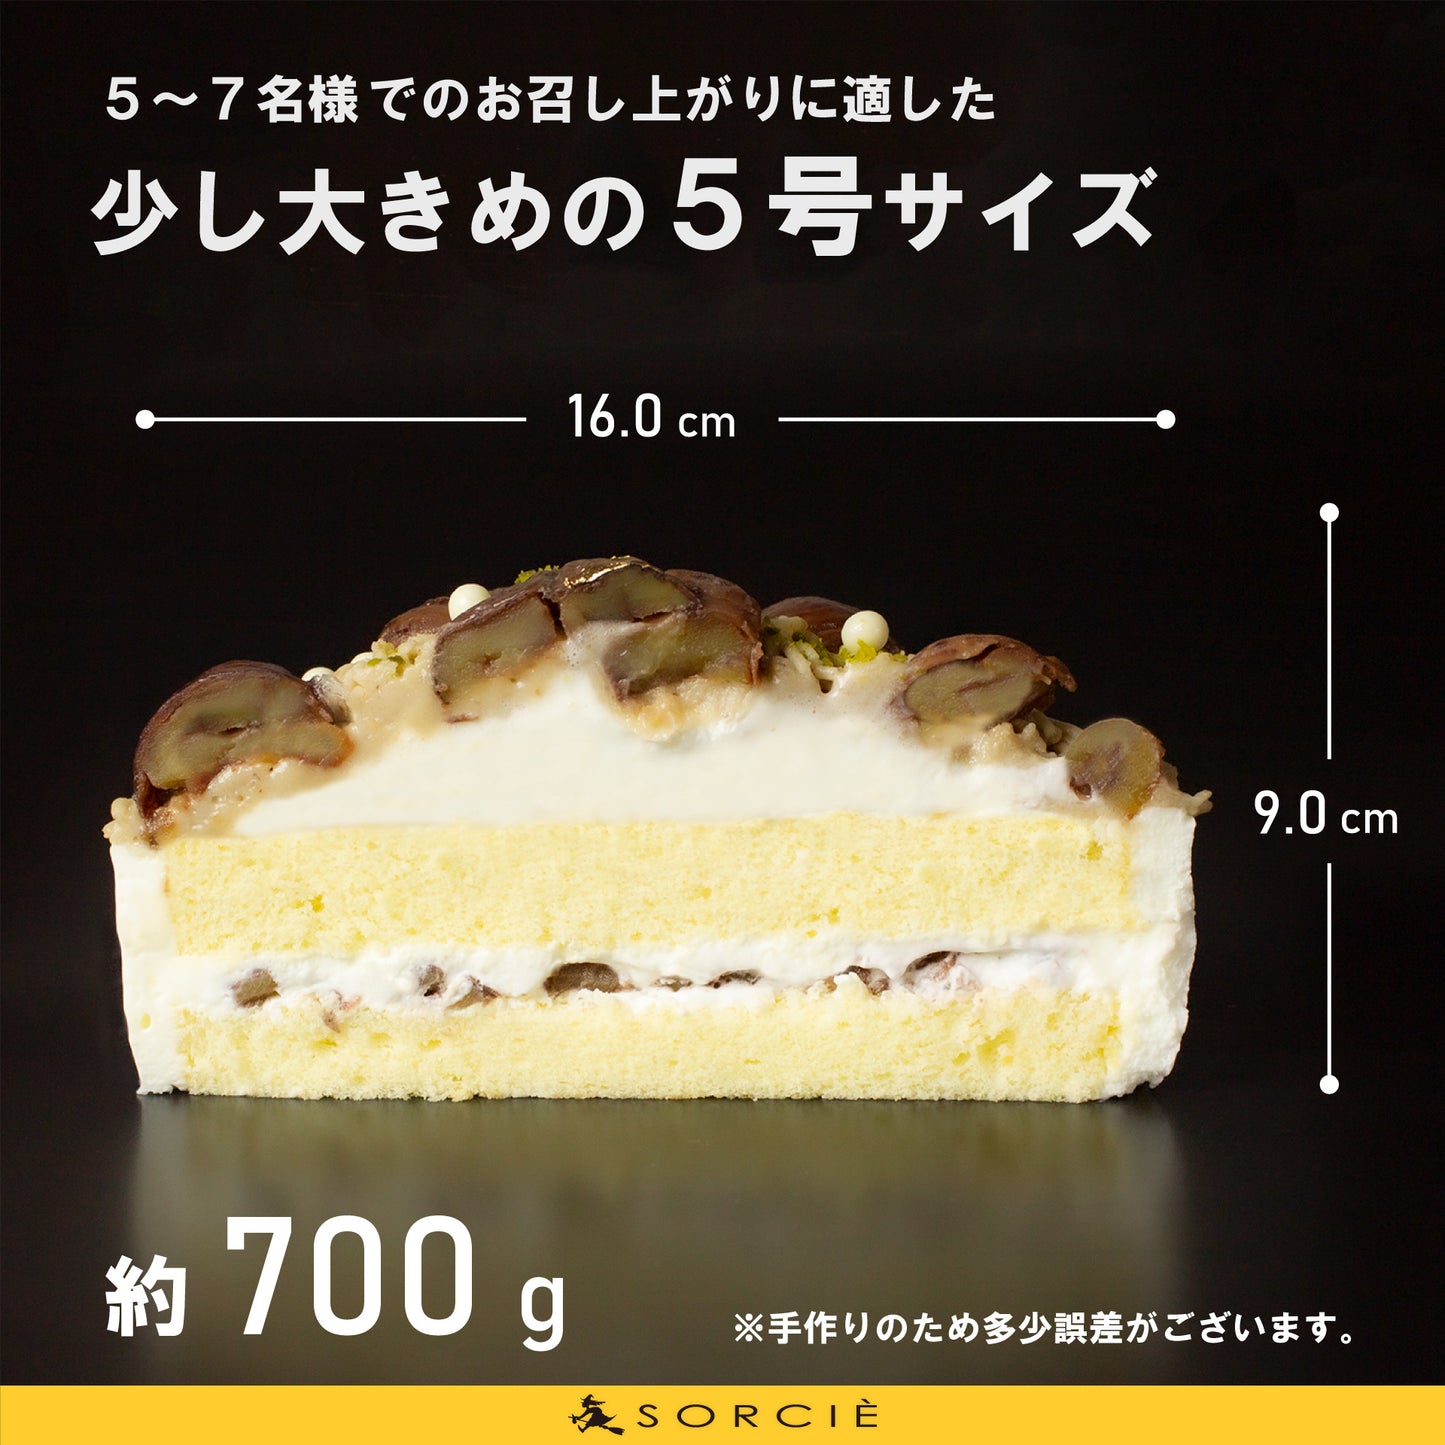 【宅配】和栗 モンブラン デコレーションケーキ